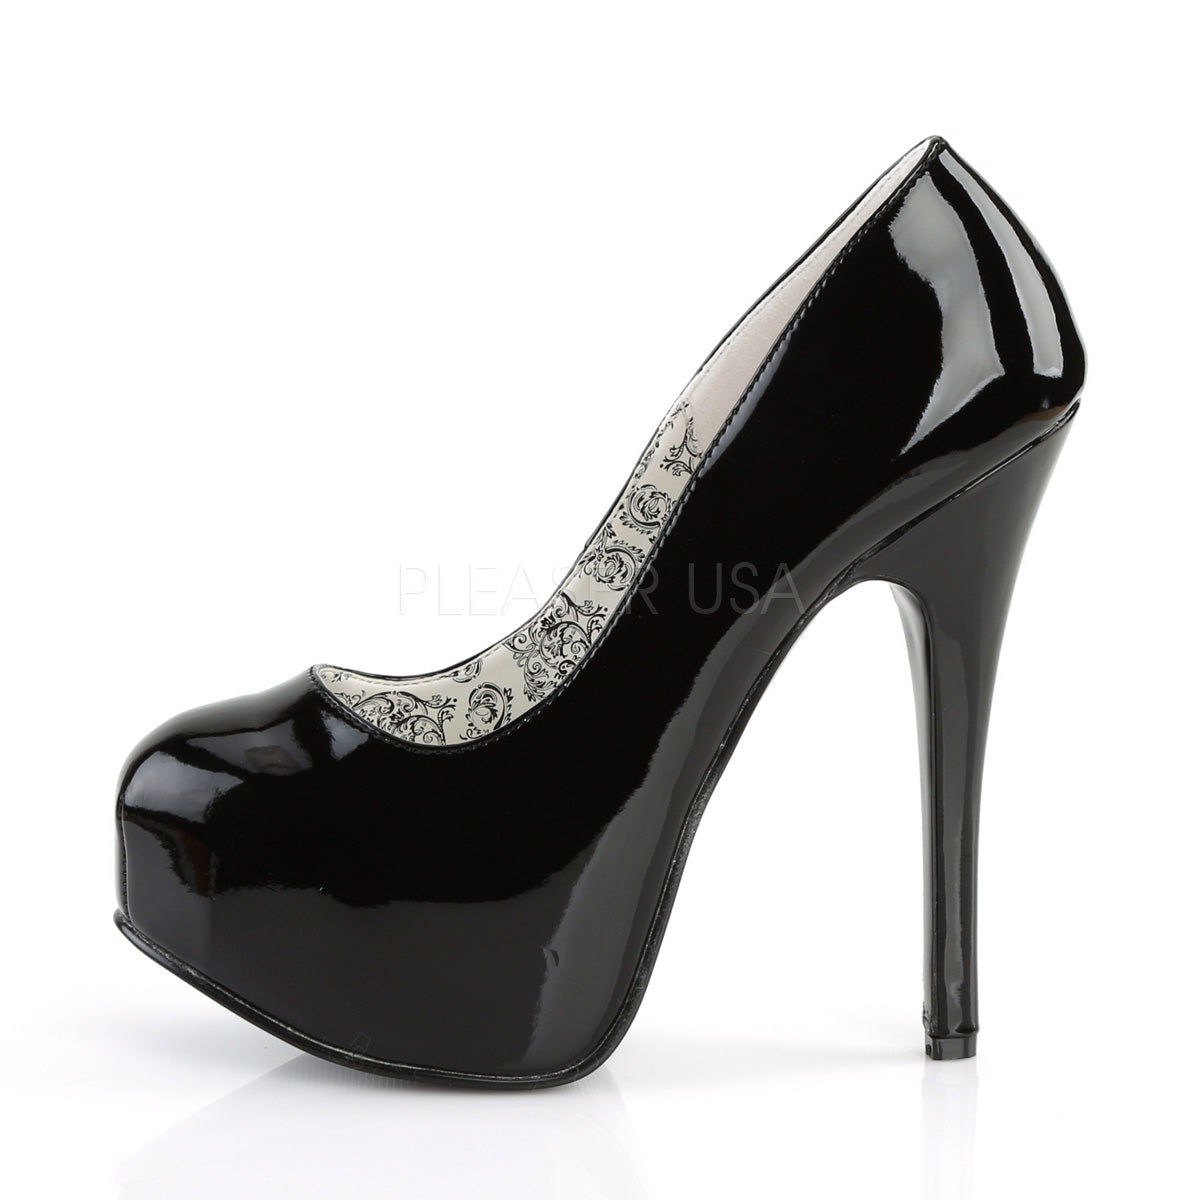 Torrid wide width stilettos | Faux suede heels, Black stiletto heels, Ankle  strap heels